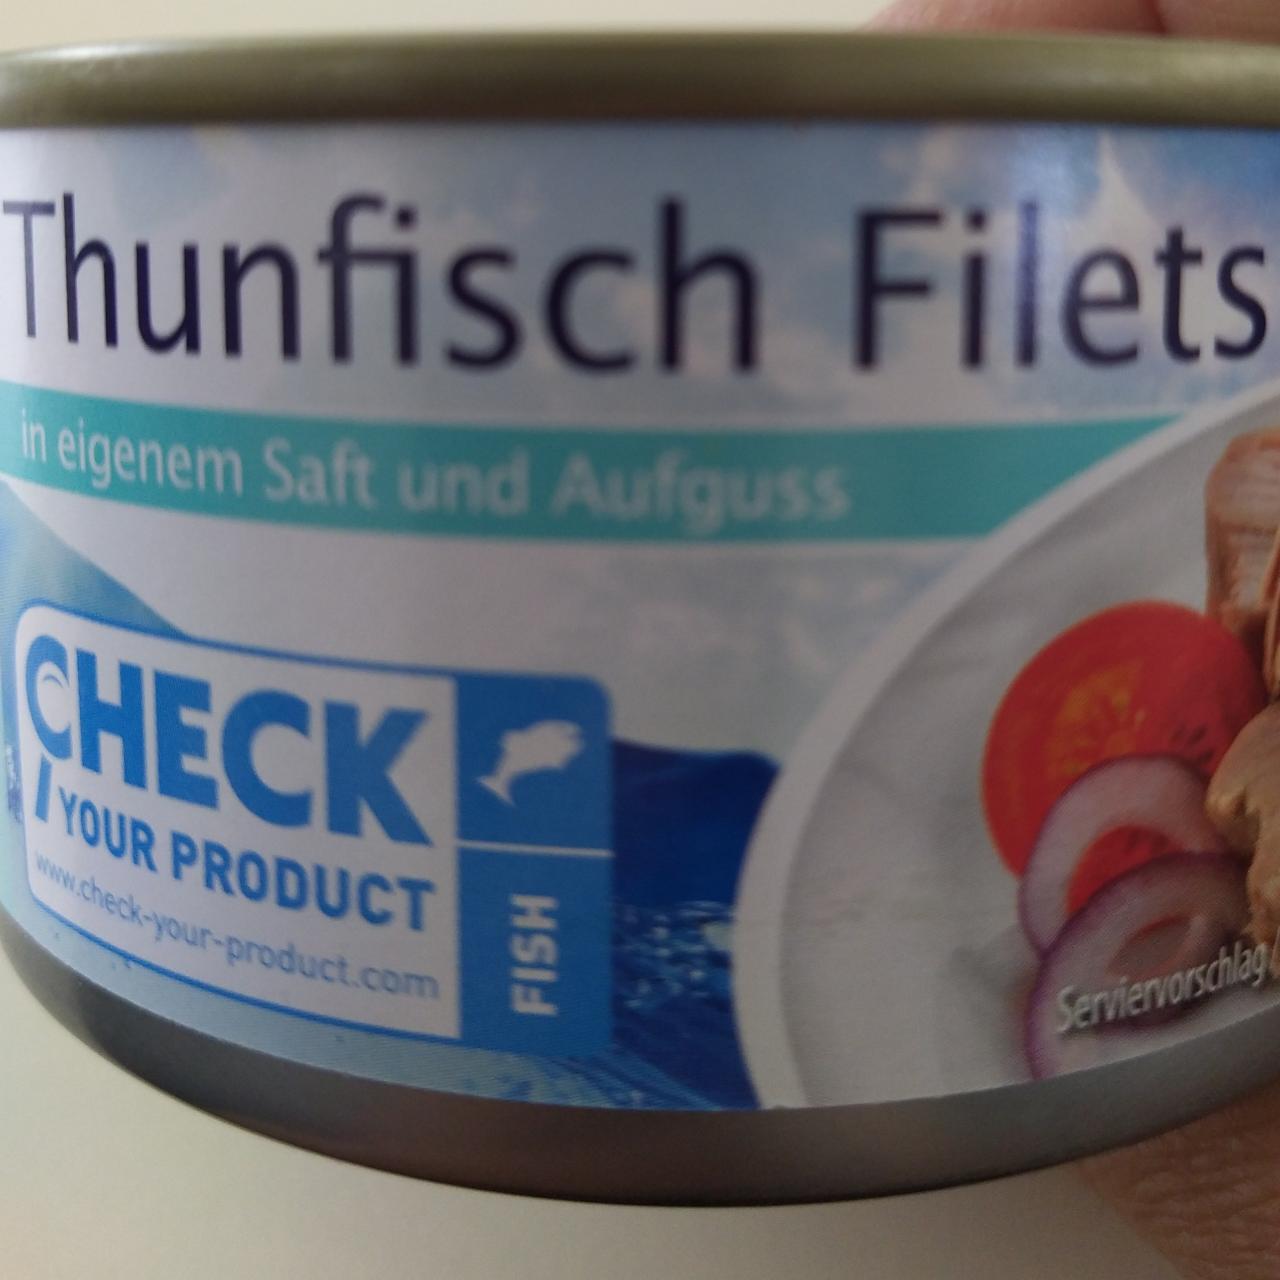 Fotografie - Thunfisch Filets in eigenem Saft und Aufguss